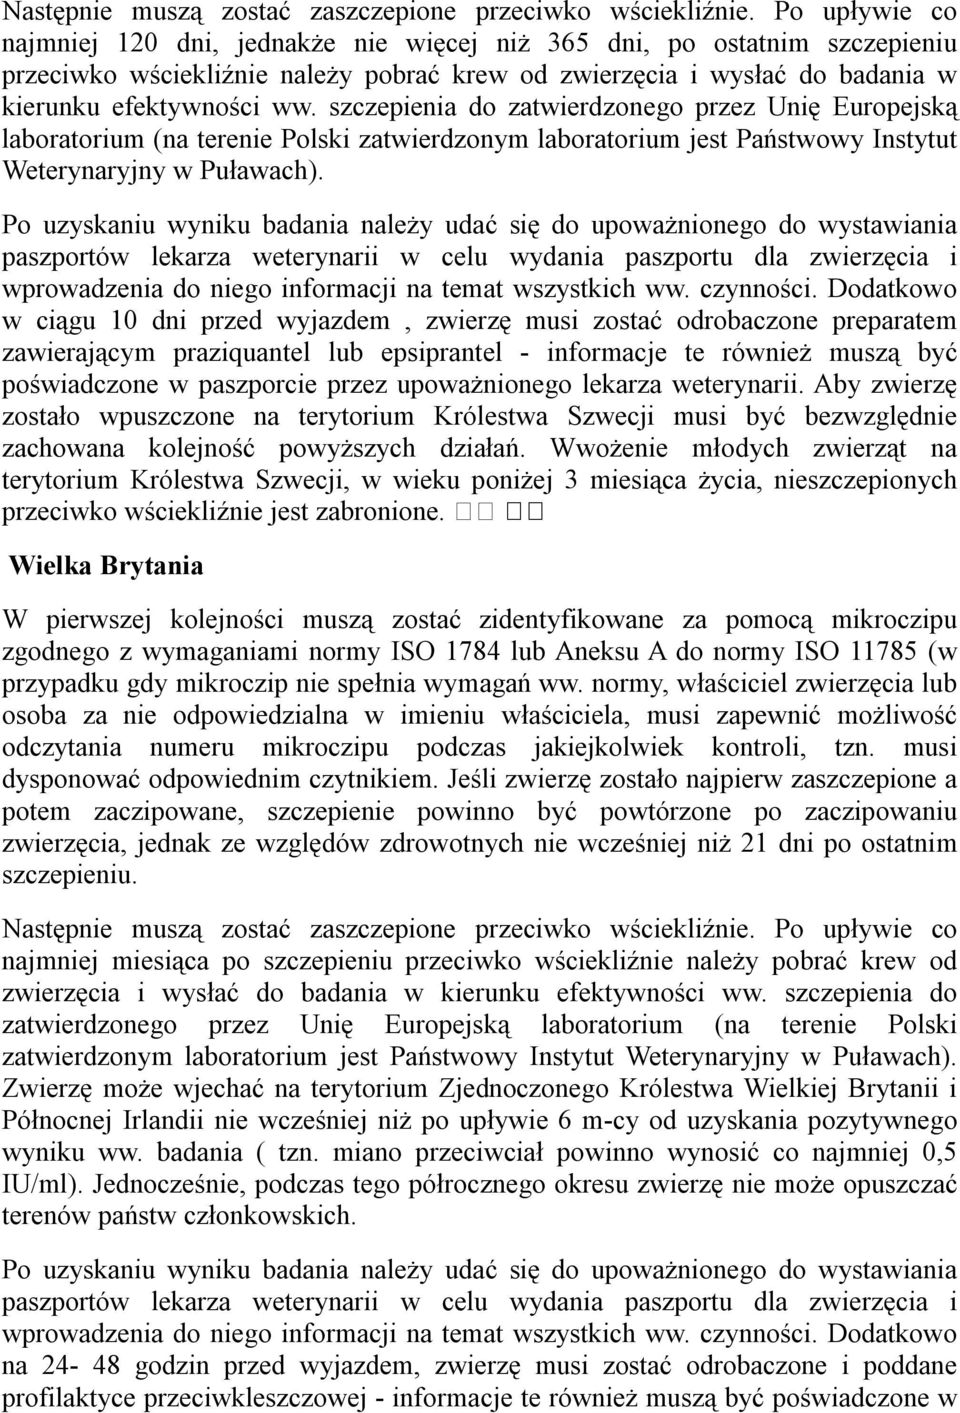 szczepienia do zatwierdzonego przez Unię Europejską laboratorium (na terenie Polski zatwierdzonym laboratorium jest Państwowy Instytut Weterynaryjny w Puławach).